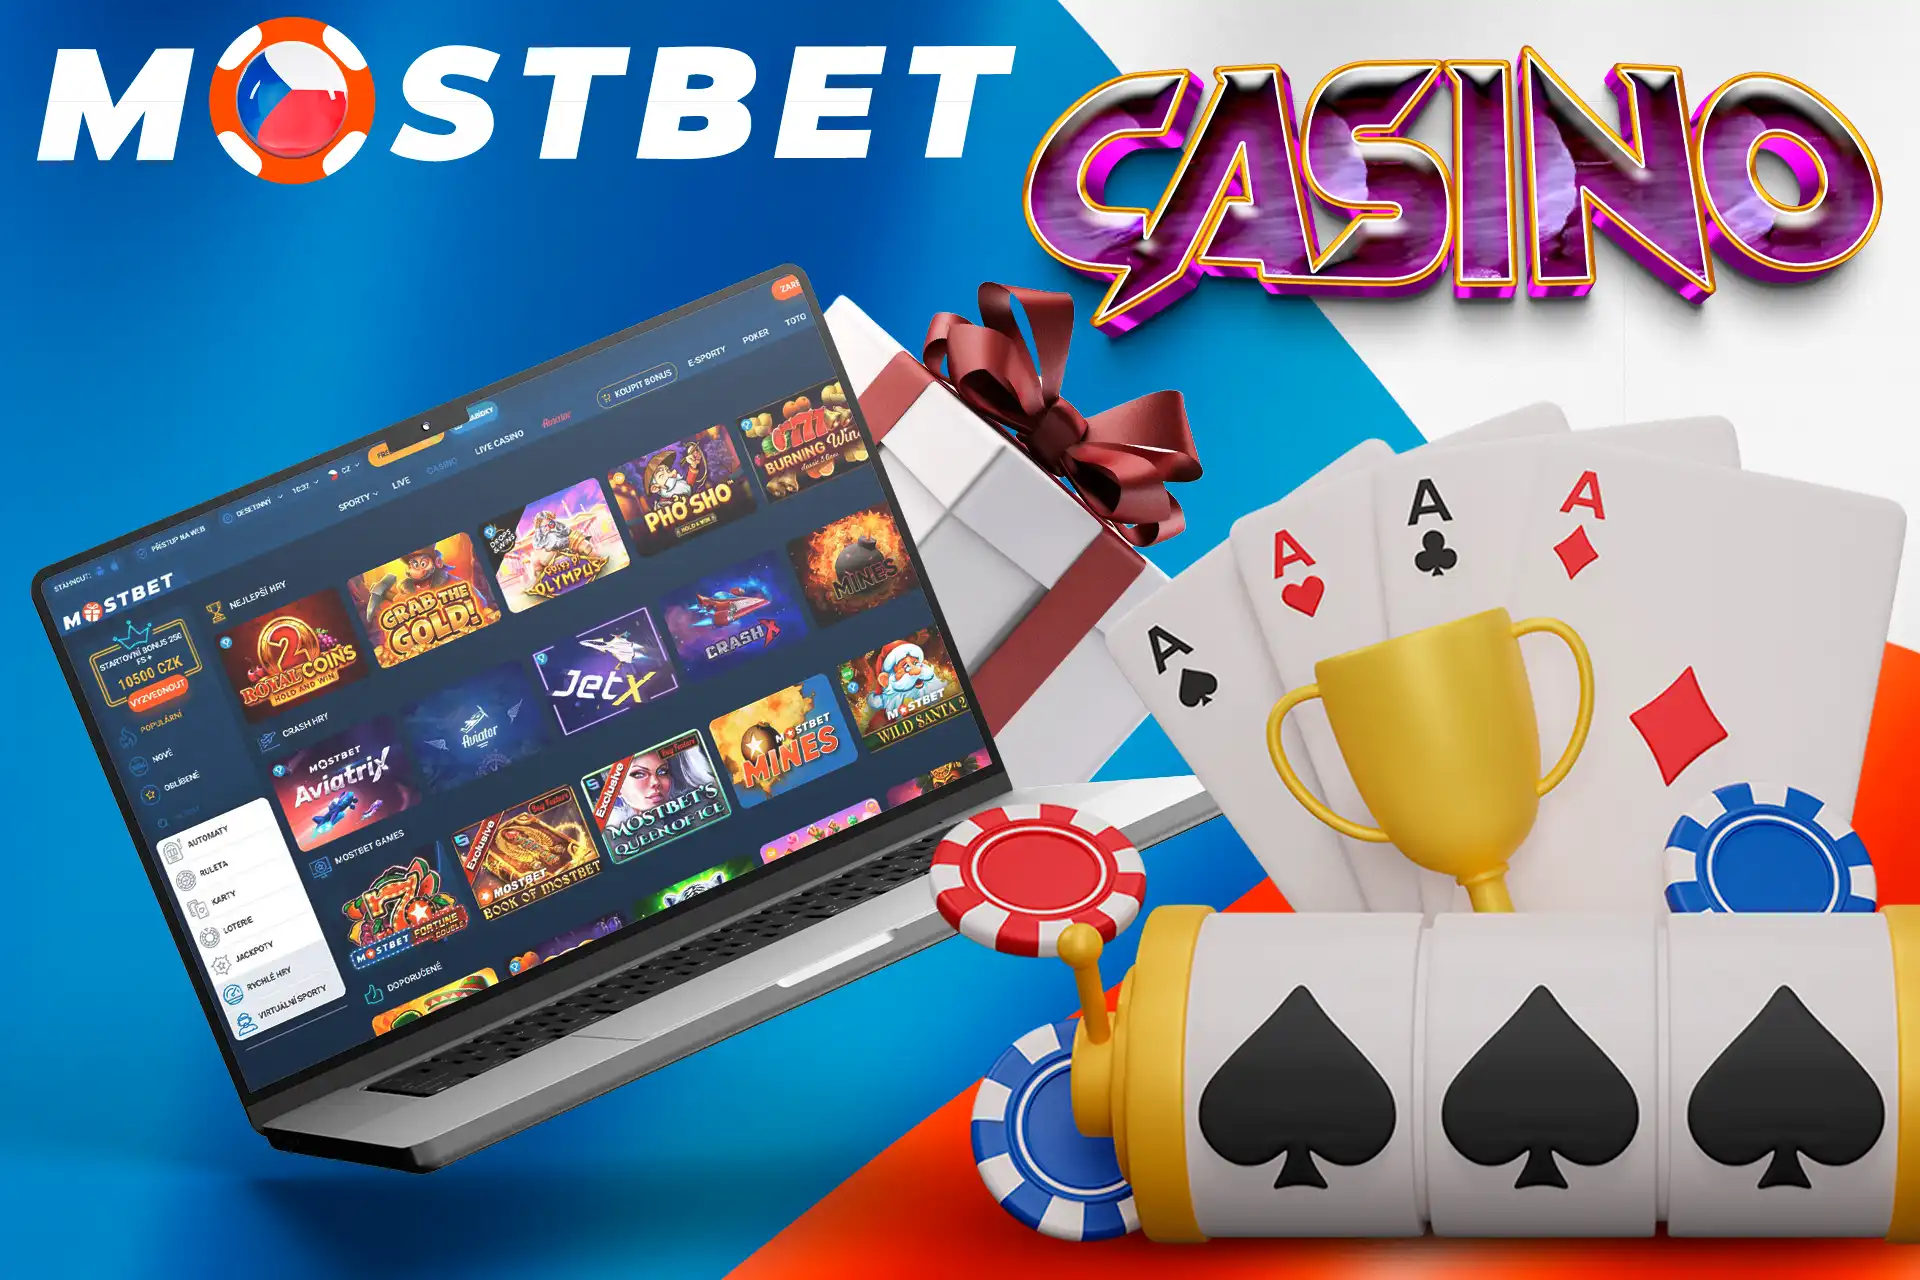 V Mostbetu na vás čekají tisíce kasinových her a uvítací bonus